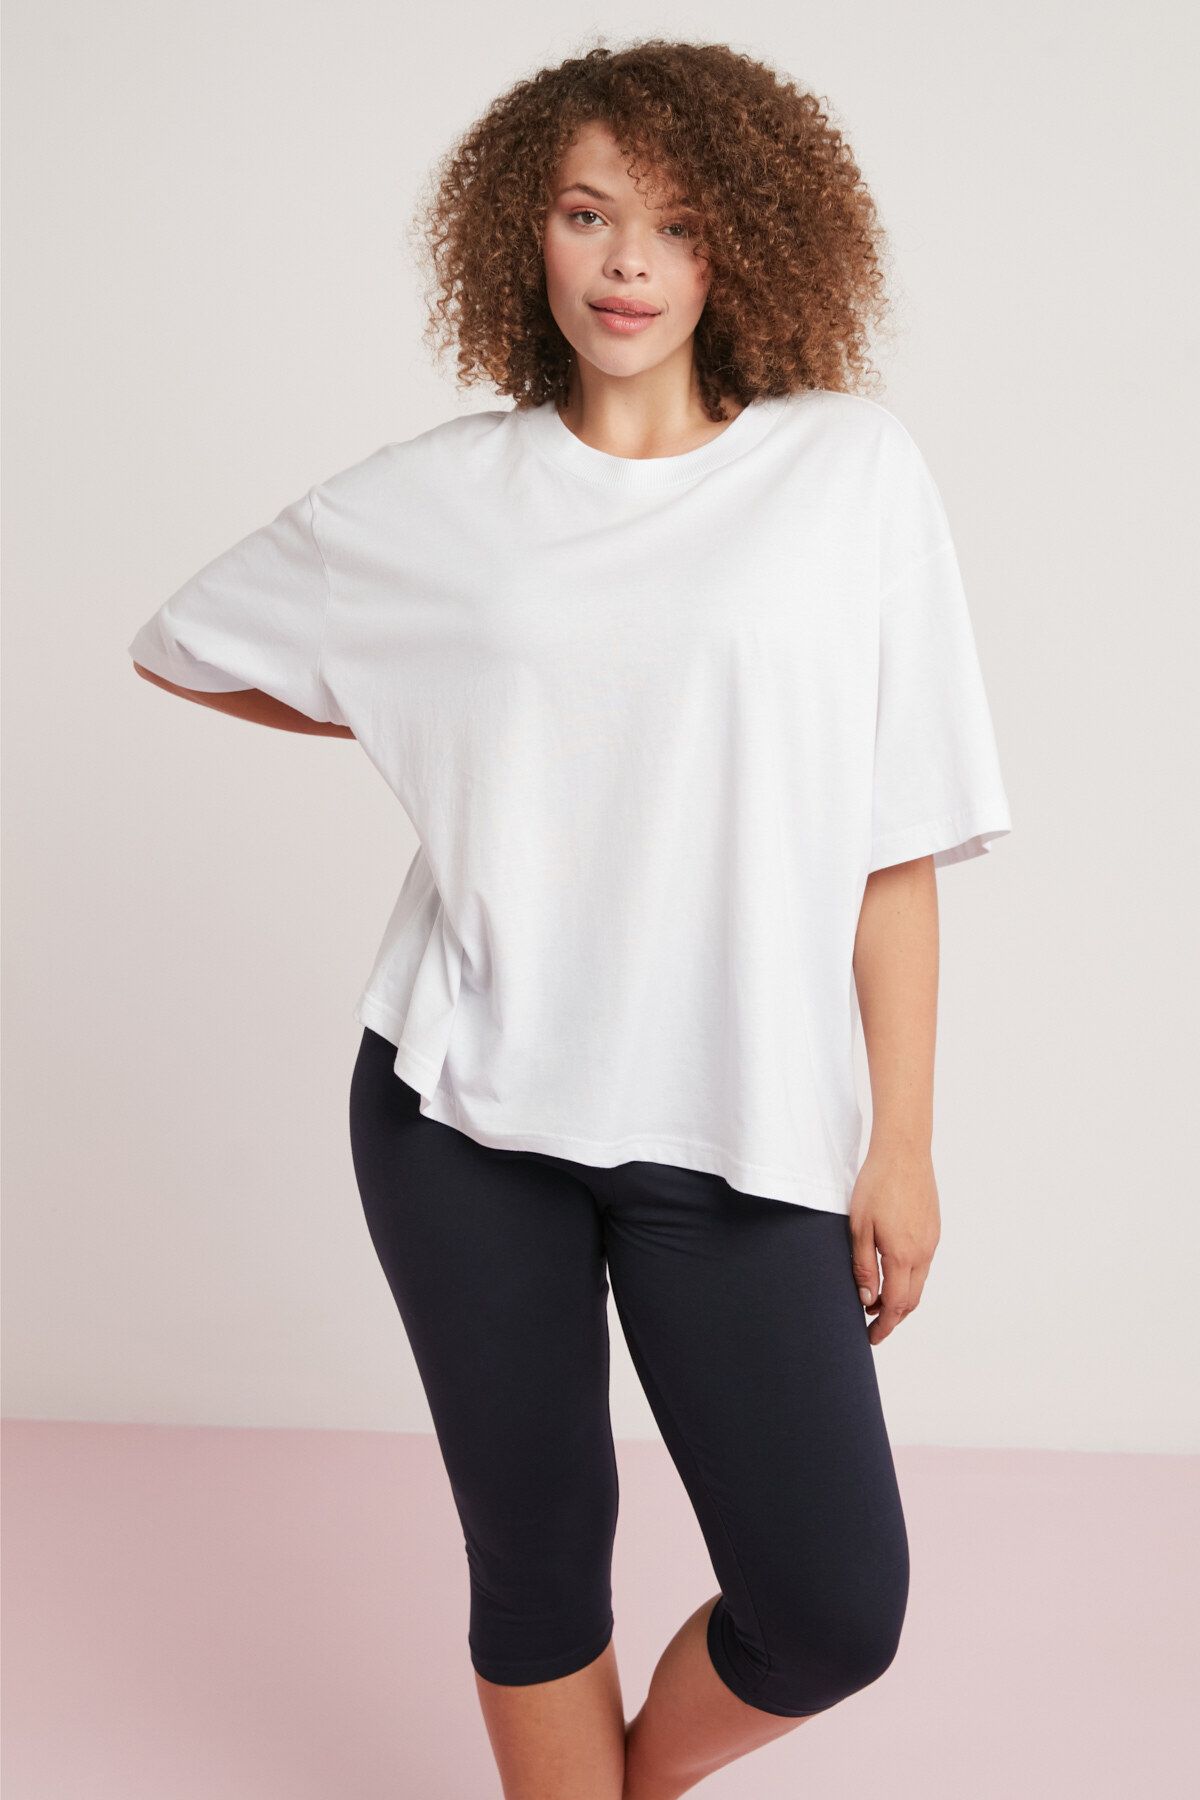 ETHIQUET Allison Kadın 100% Pamuk Oversize Yuvarlak Yaka Yarım Kollu Beyaz Büyük Beden T-shirt